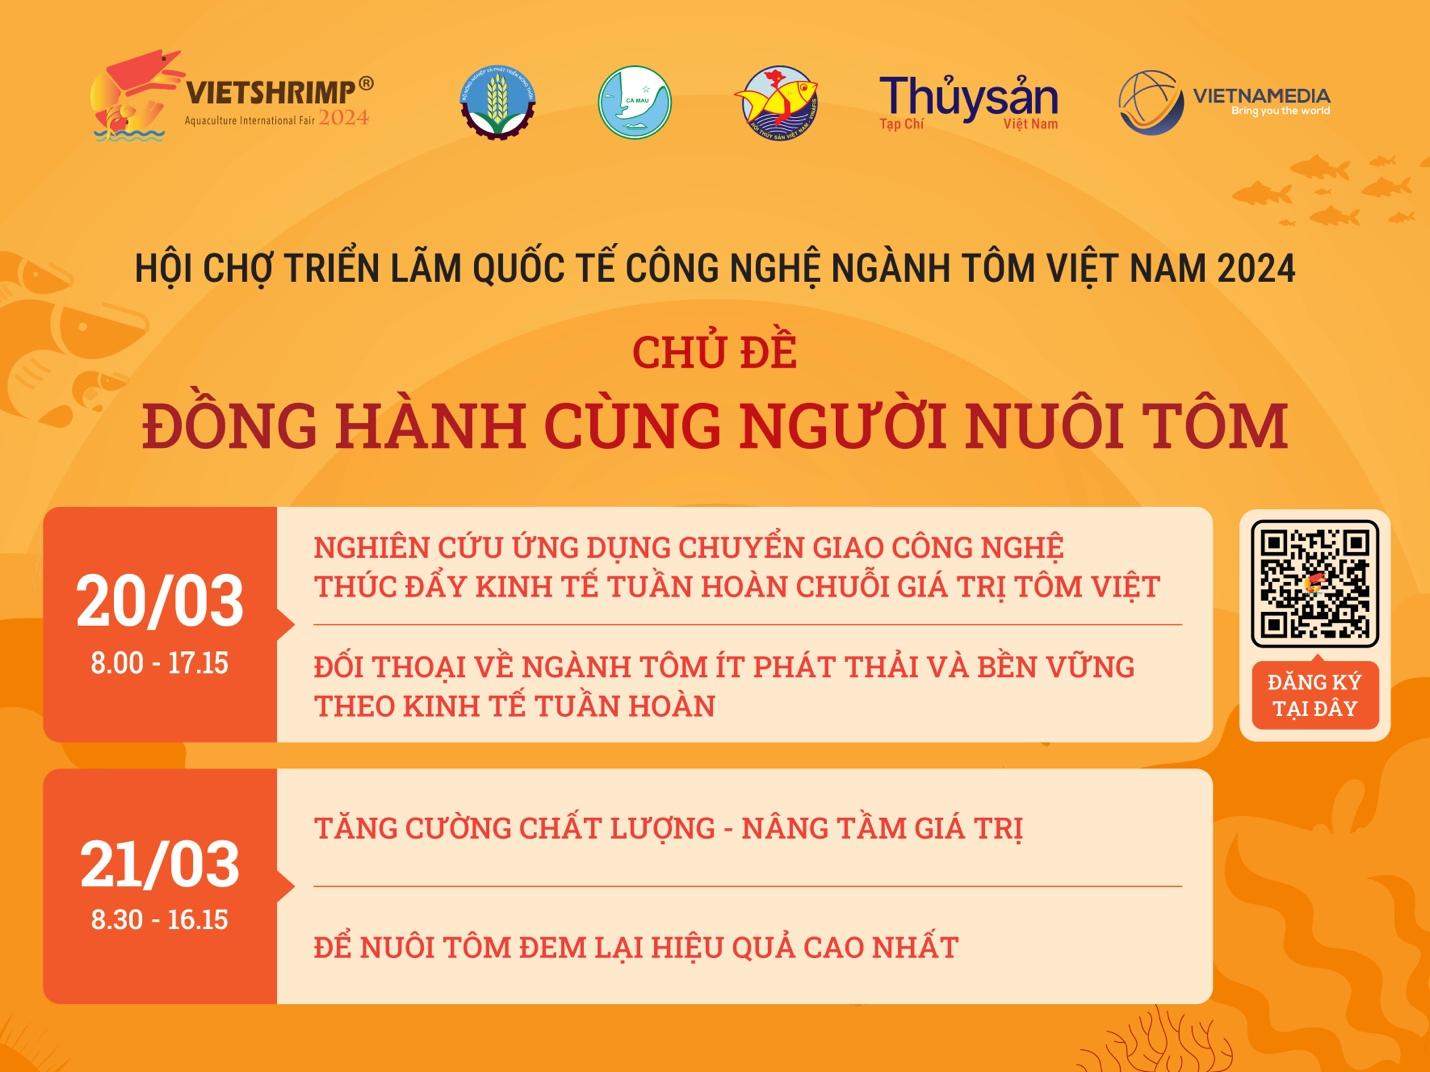 Trong các ngày từ 20 – 21 tháng 3 năm 2024, tại TP. Cà Mau sẽ diễn ra Hội thảo quốc tế Vietshrimp 2024 với sự tham gia của Cục Thuỷ sản, các Hiệp hội và chuyên gia đầu ngành thuỷ sản tại Việt Nam và trên thế giới.